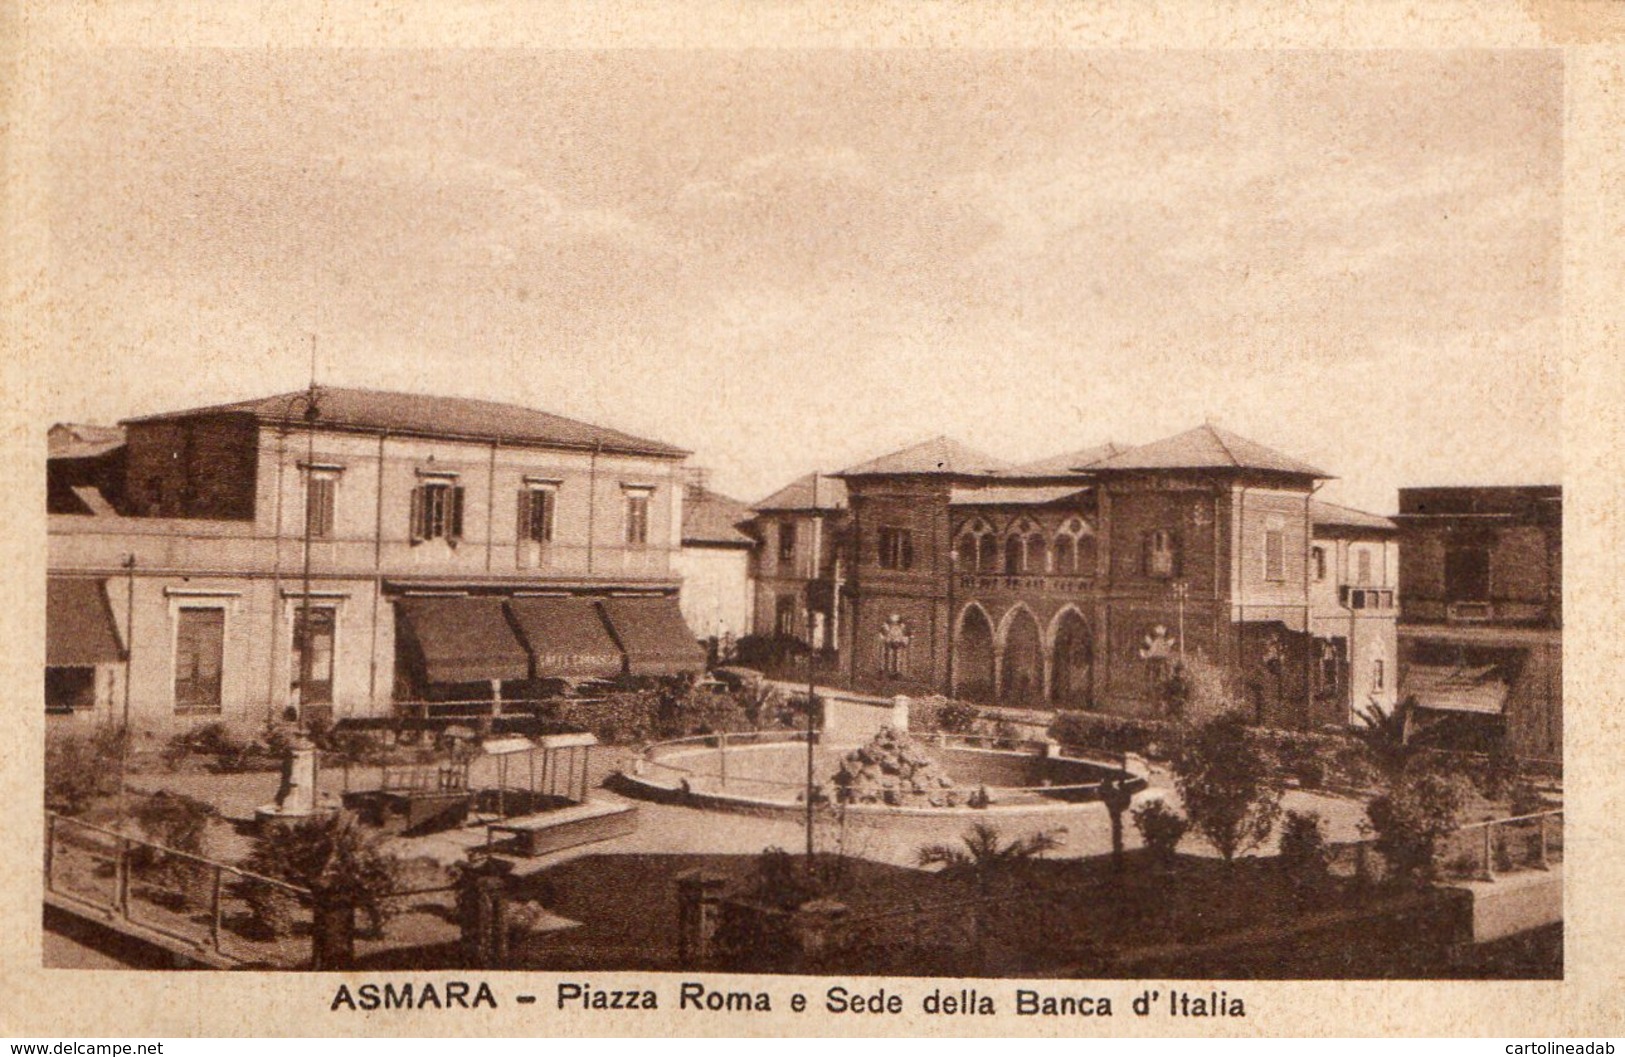 [DC7544] CPA - ERITREA - ASMARA - PIAZZA ROMA E SEDE DELLA BANCA D'ITALIA - Old Postcard - Eritrea